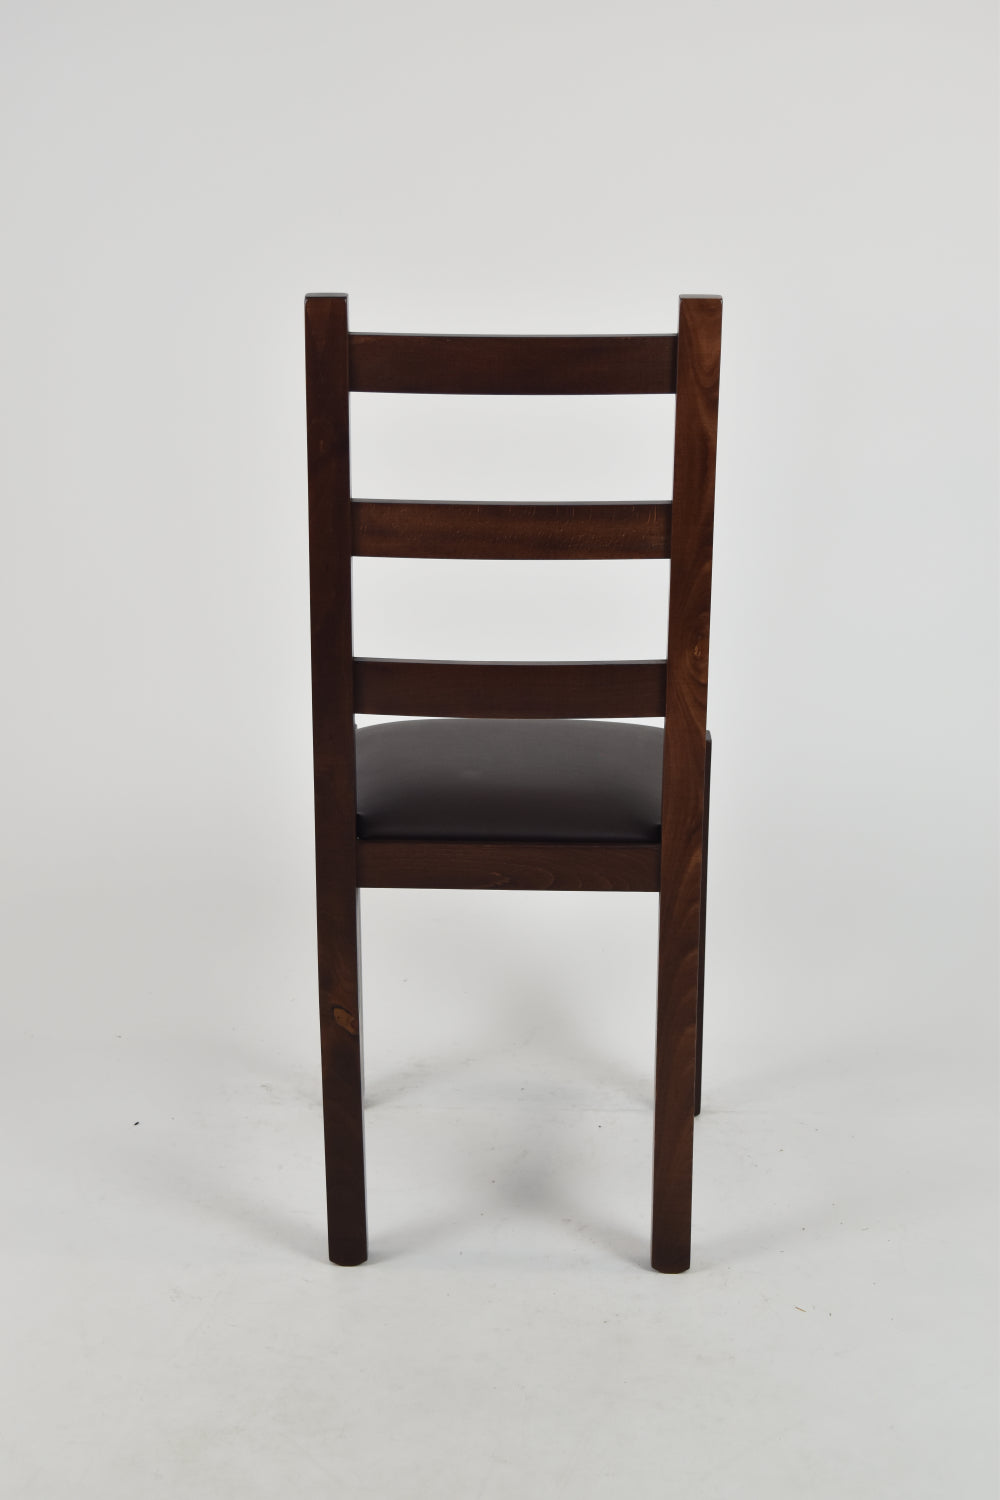 Tommychairs - Set 4 sillas de Cocina y Comedor  Rustica, Estructura en Madera de Haya Color Nogal Oscuro y Asiento tapizado en Polipiel Color Moka